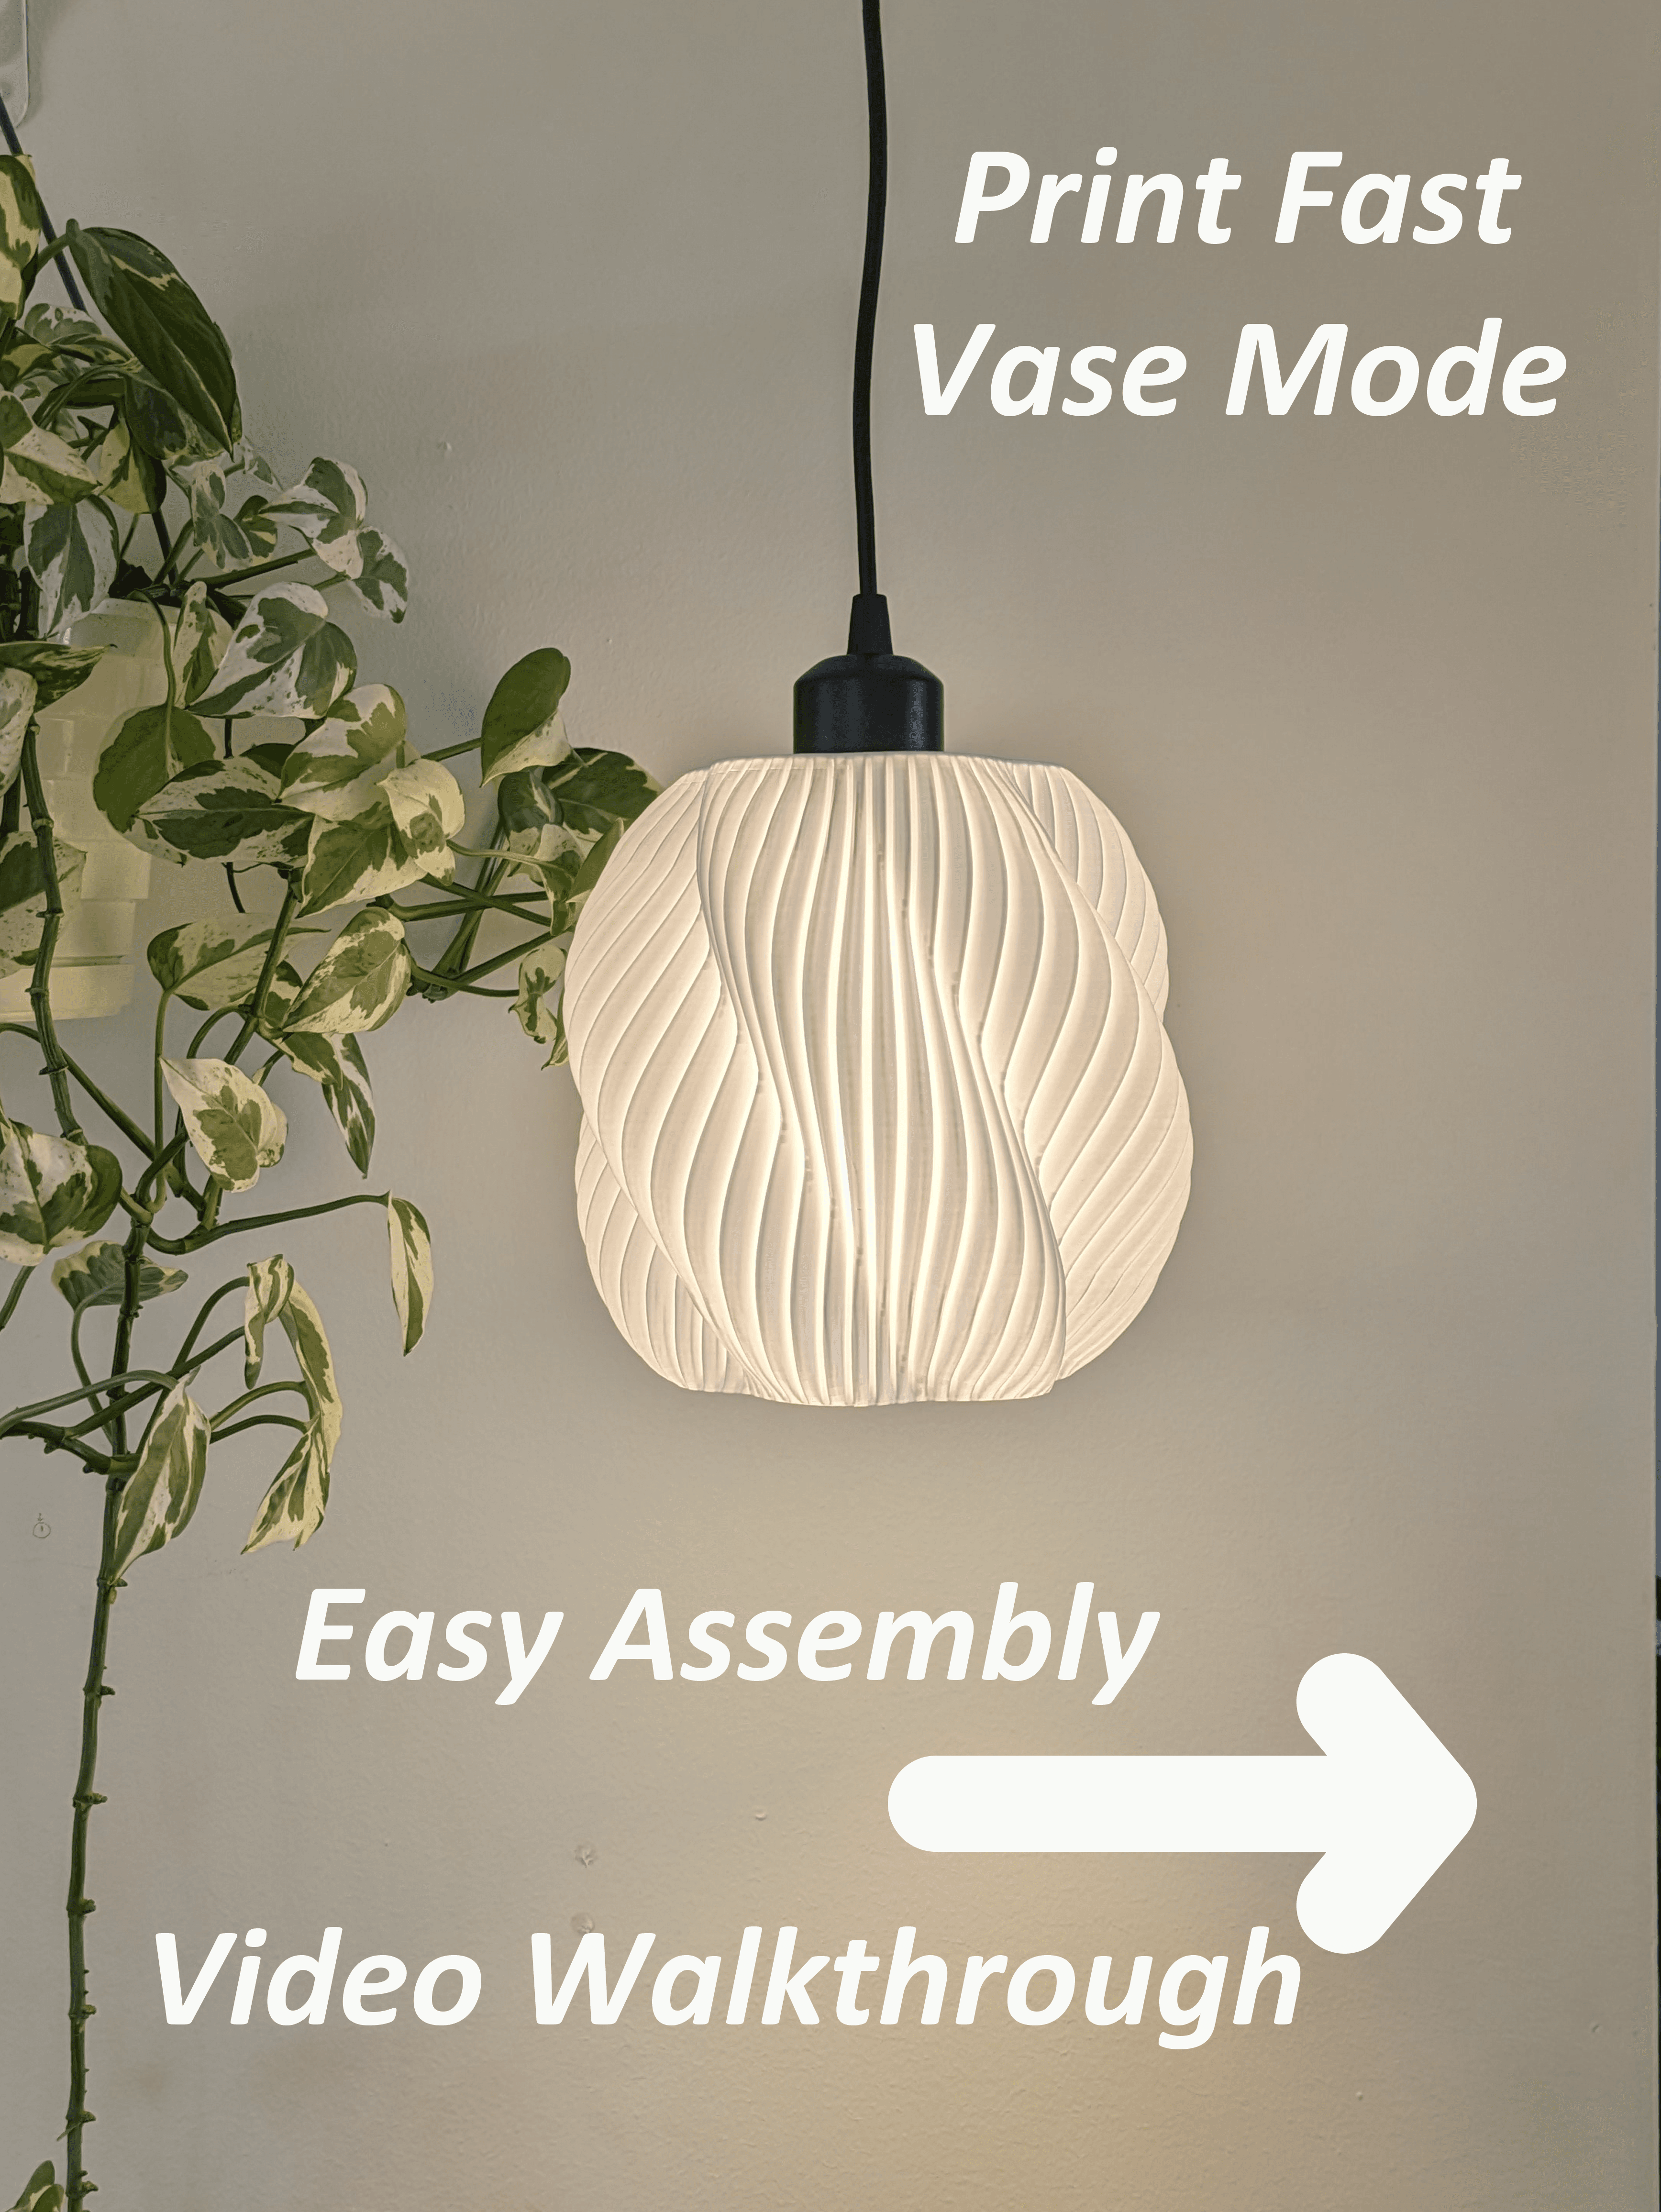 The Hestra - Vase Mode Pendant Light, Bambu 3MF 3d model